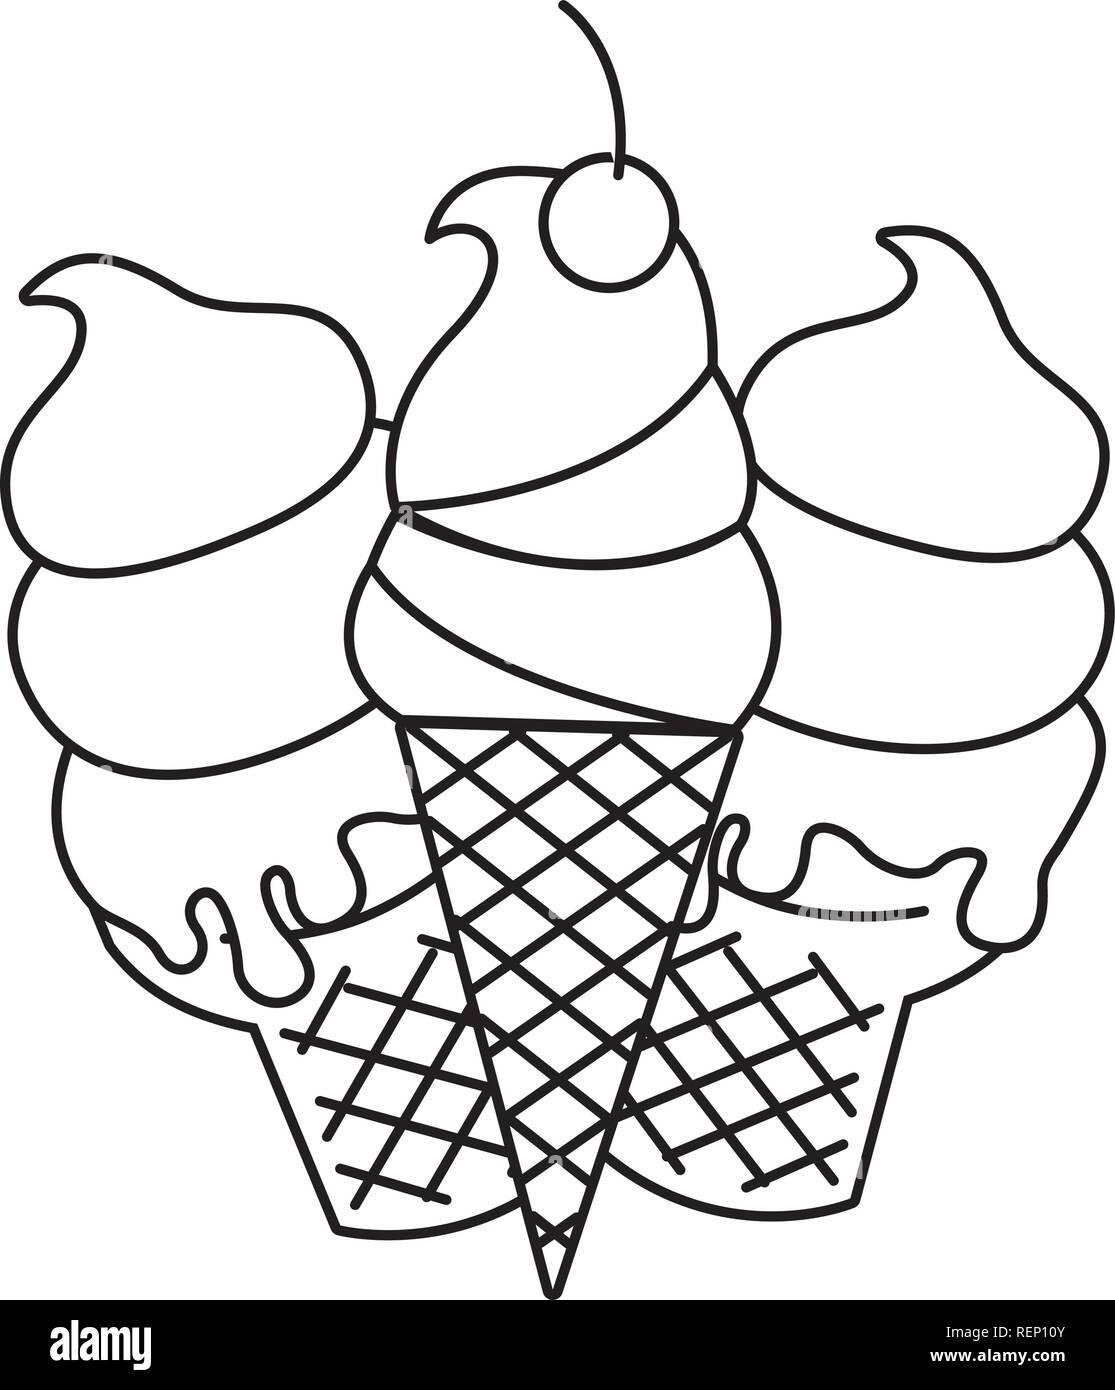 ice cream cone popsicle Stock Vector Image & Art - Alamy